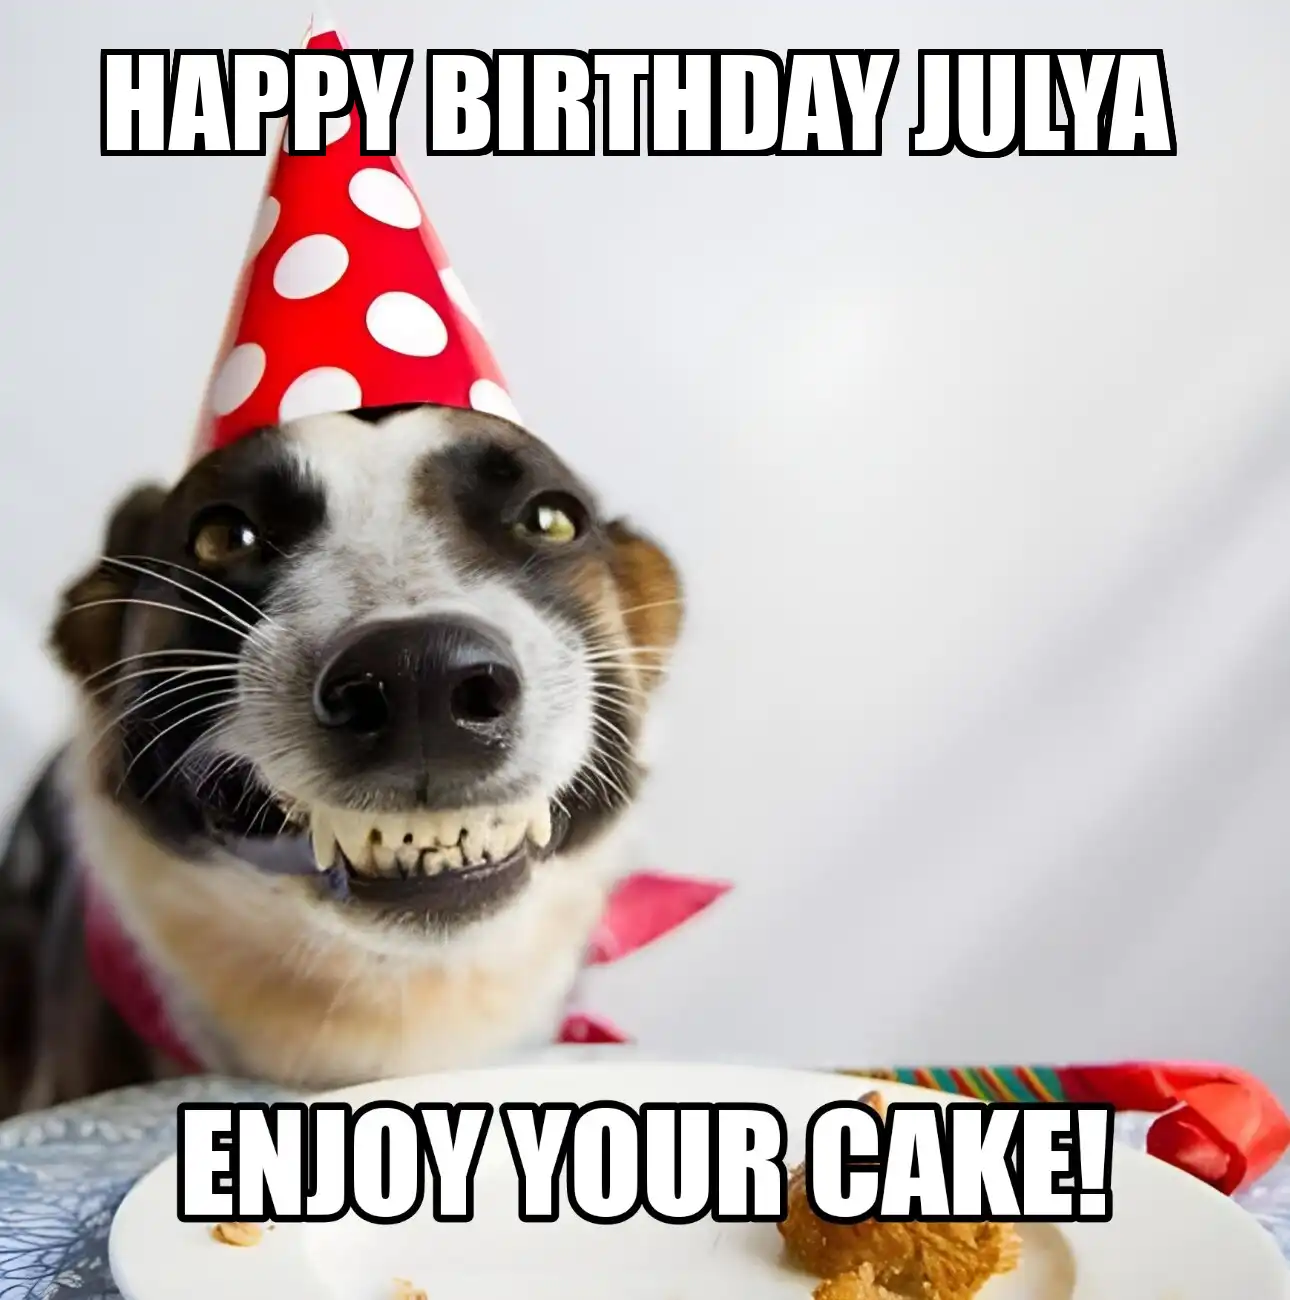 Happy Birthday Julya Enjoy Your Cake Dog Meme